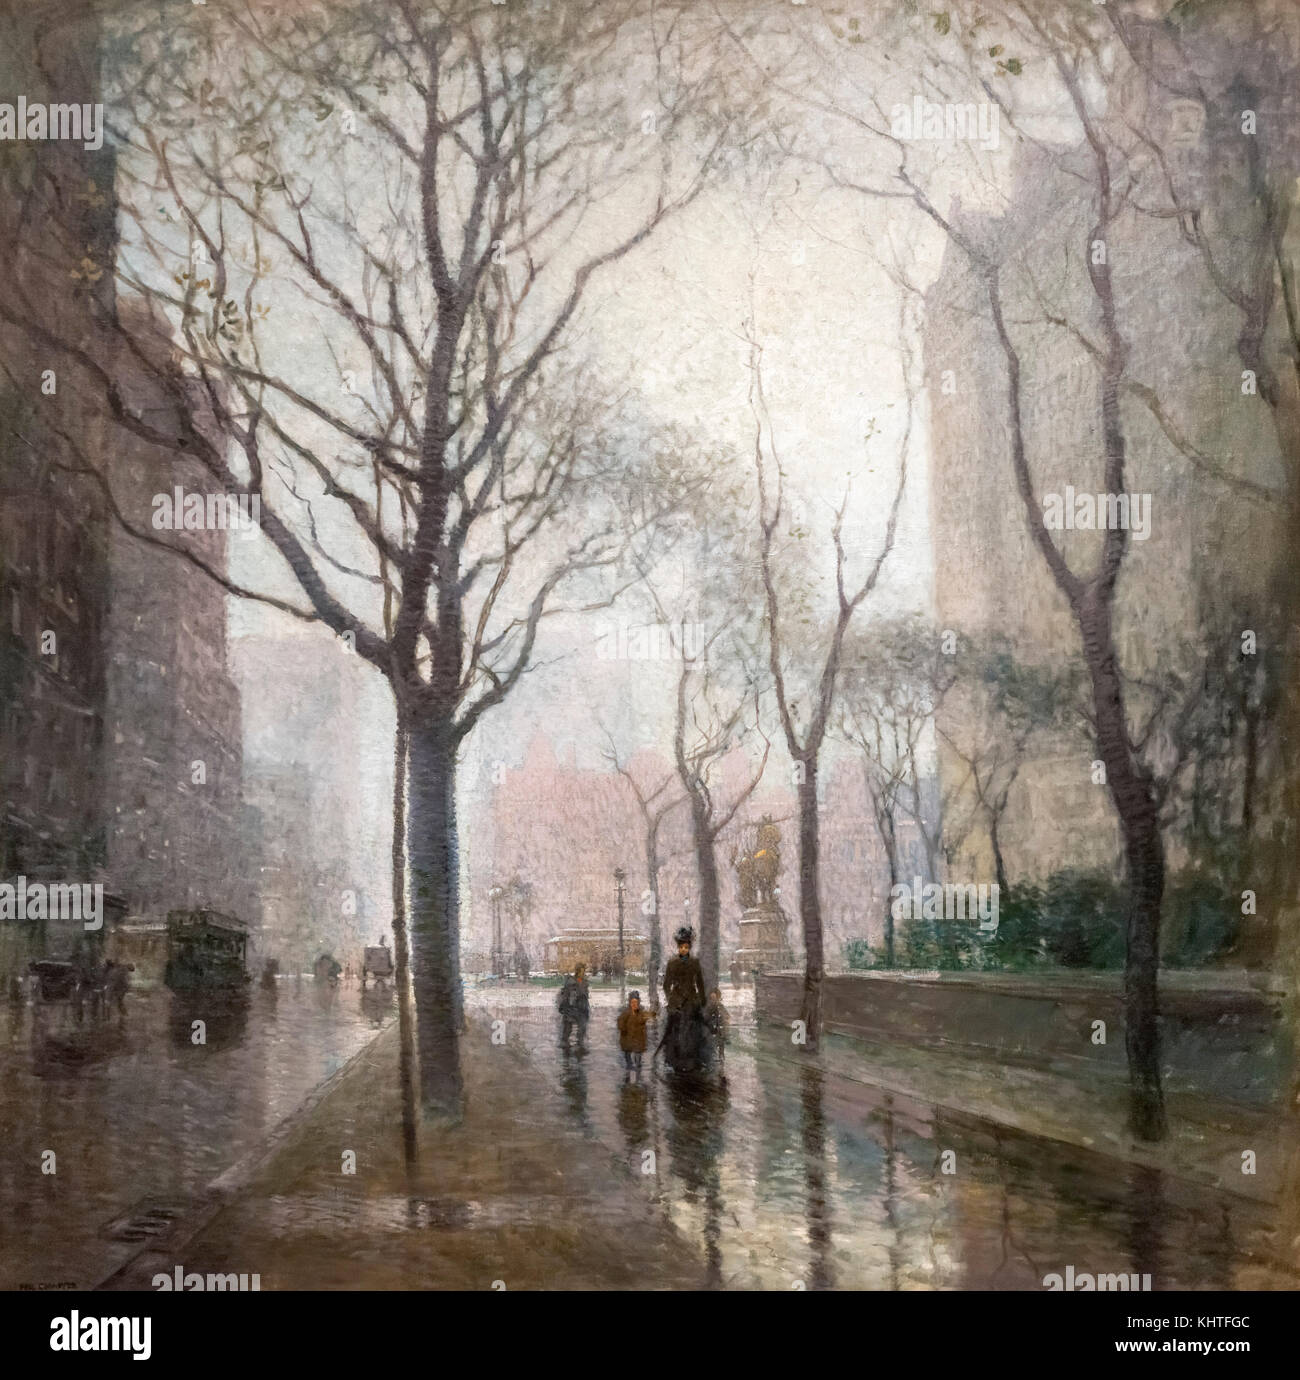 Die Plaza Nach dem Regen von Paul Cornoyer (1864-1923), Öl auf Leinwand, 1908 Stockfoto